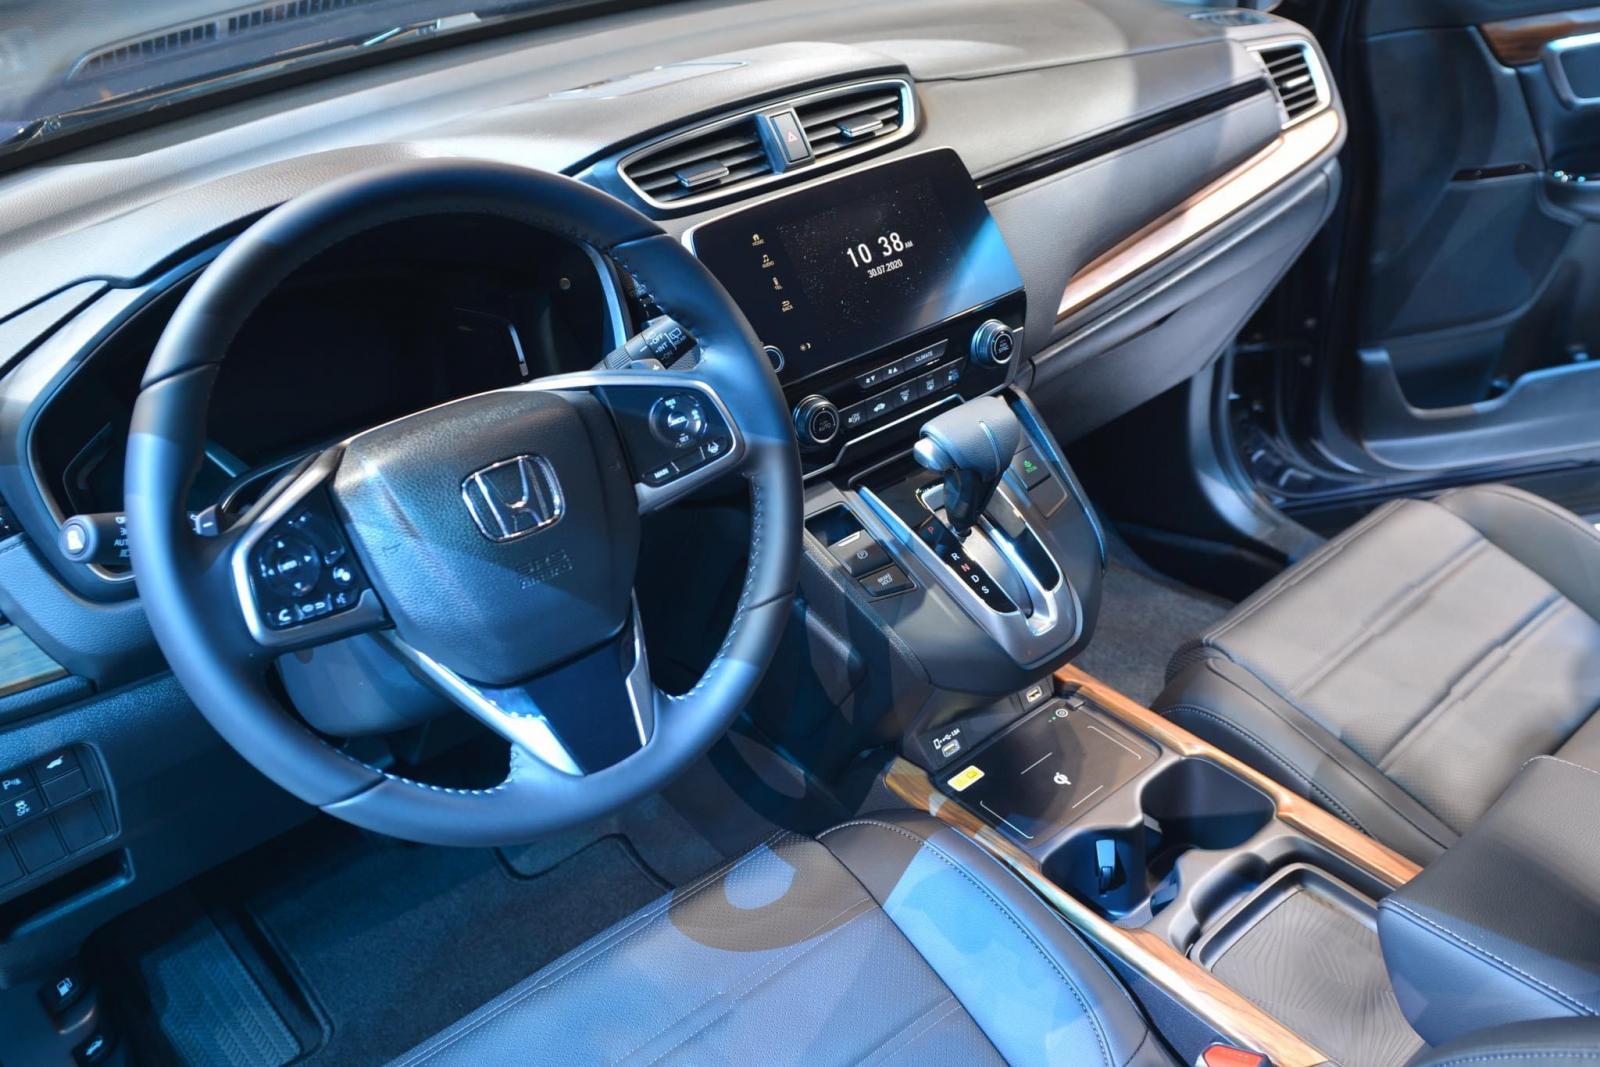 Honda CRV 2022 mới, khuyến mại cuối năm tốt nhất Hà Nội